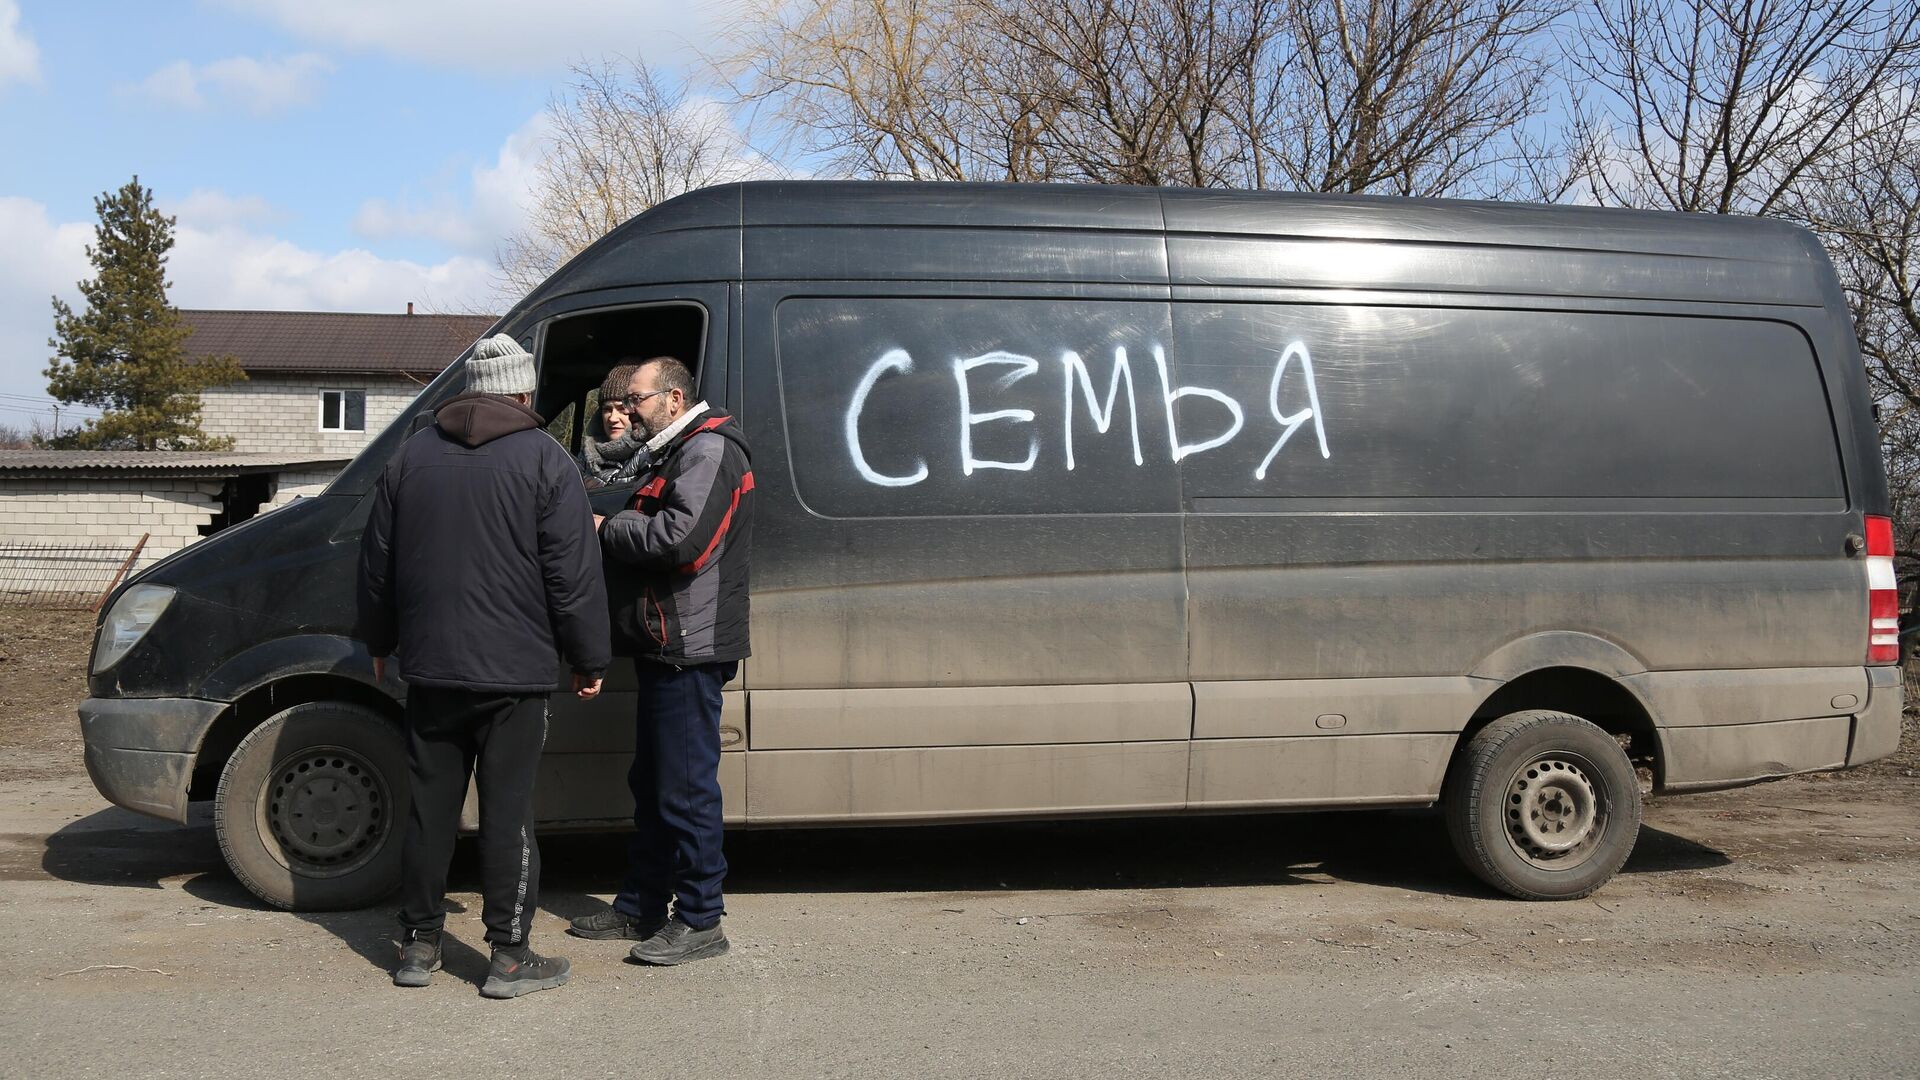 Жители покидают Мариуполь на машине с надписью Семья - РИА Новости, 1920, 02.04.2022